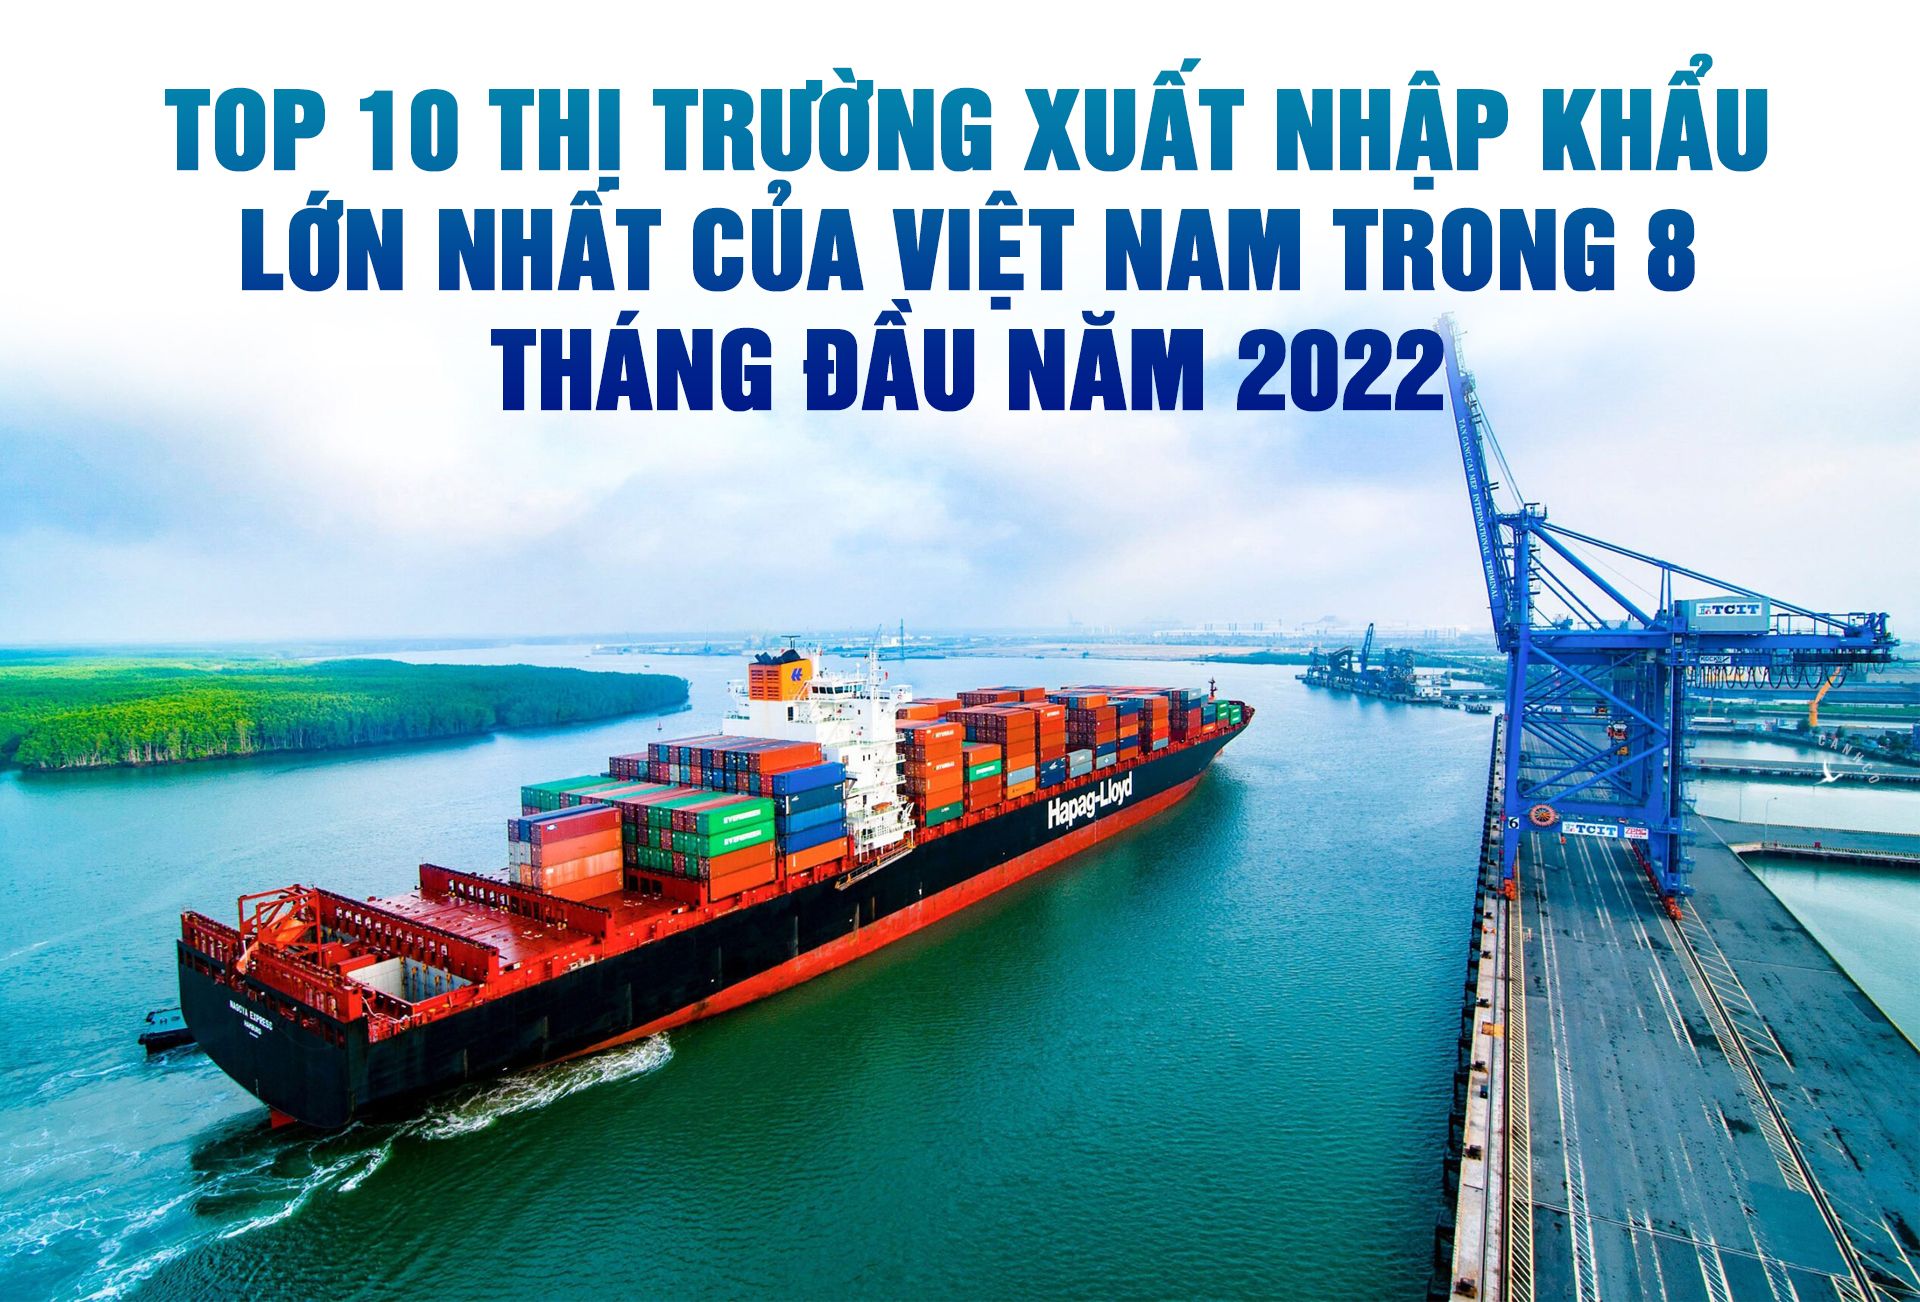 Top 10 thị trường xuất nhập khẩu lớn nhất của Việt Nam trong 8 tháng đầu năm 2022